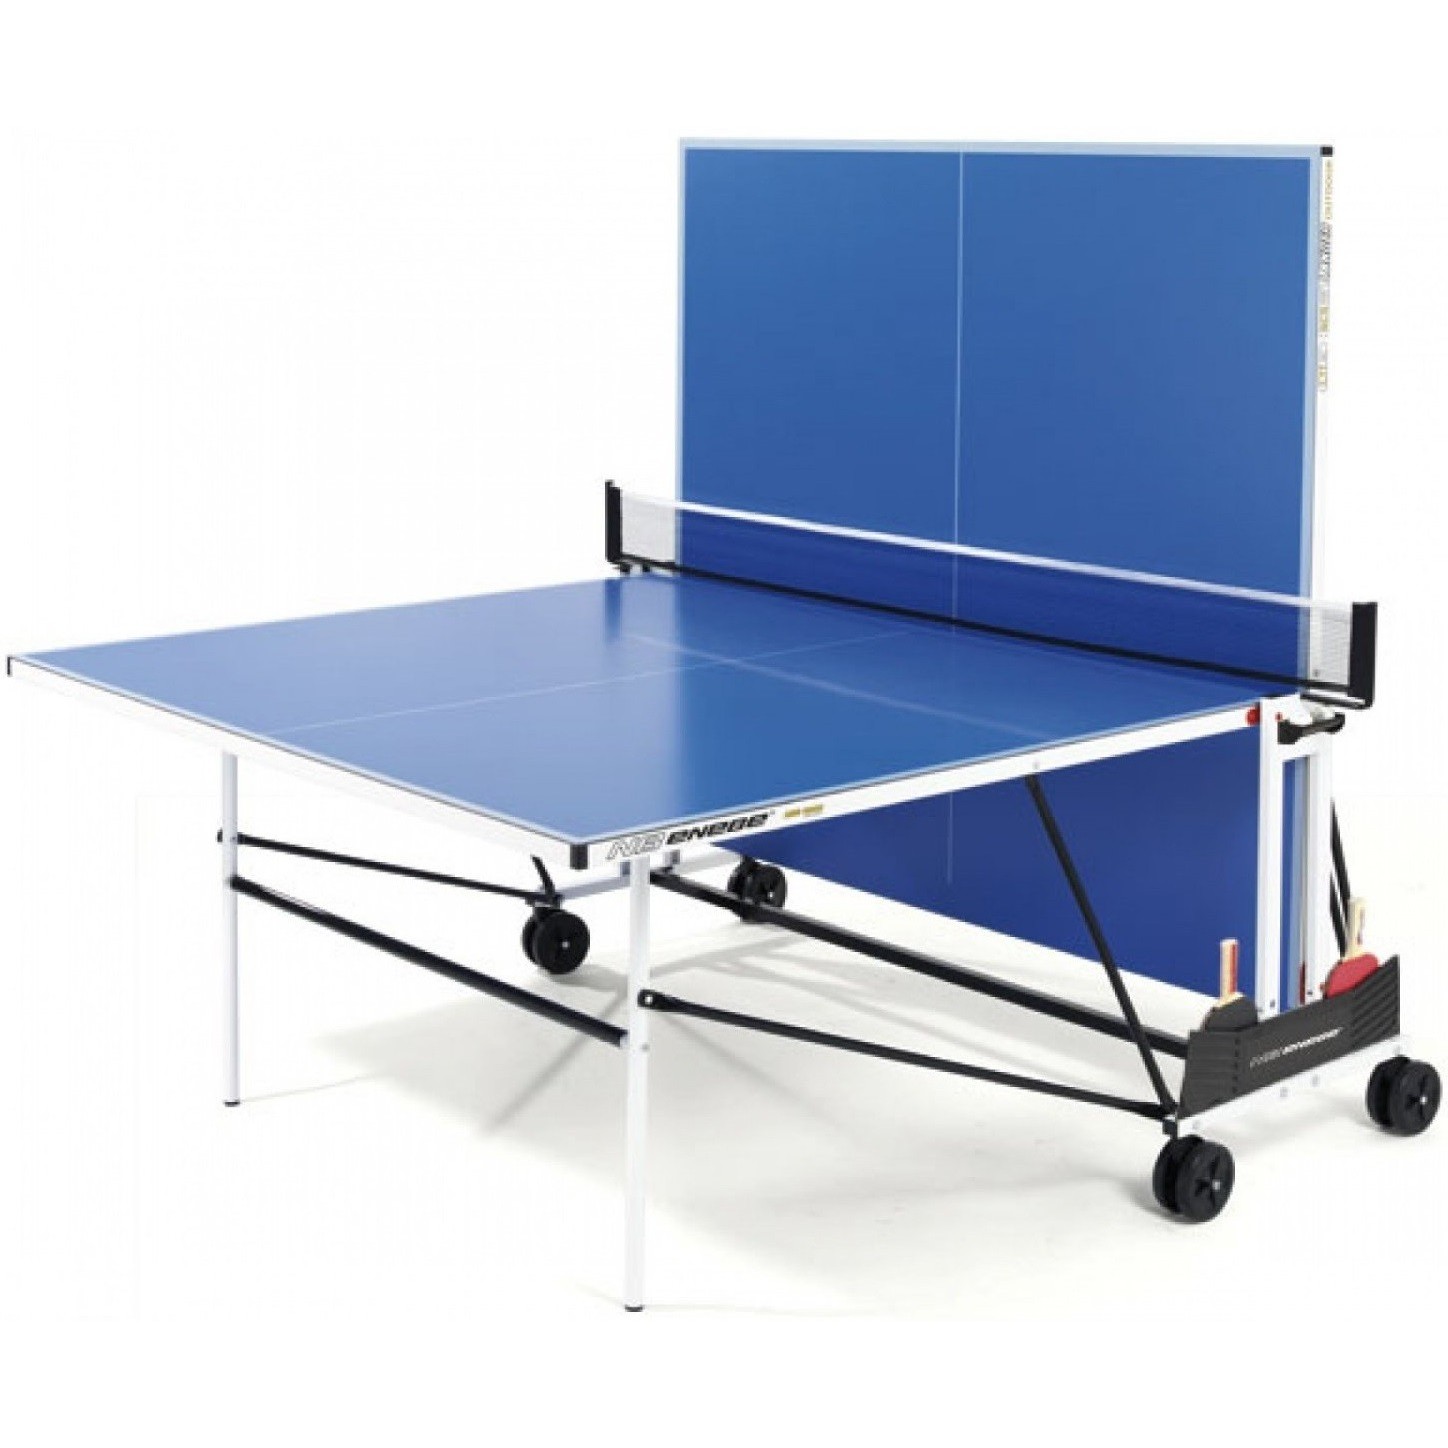 Складной теннисный стол для улицы. Теннисный стол NB Enebe. Теннисный стол Enebe NB 108 60. Теннисный стол 2.01.5092. Теннисный стол уличный, Витязь, разборный, синий, композит 274х152,5 см.